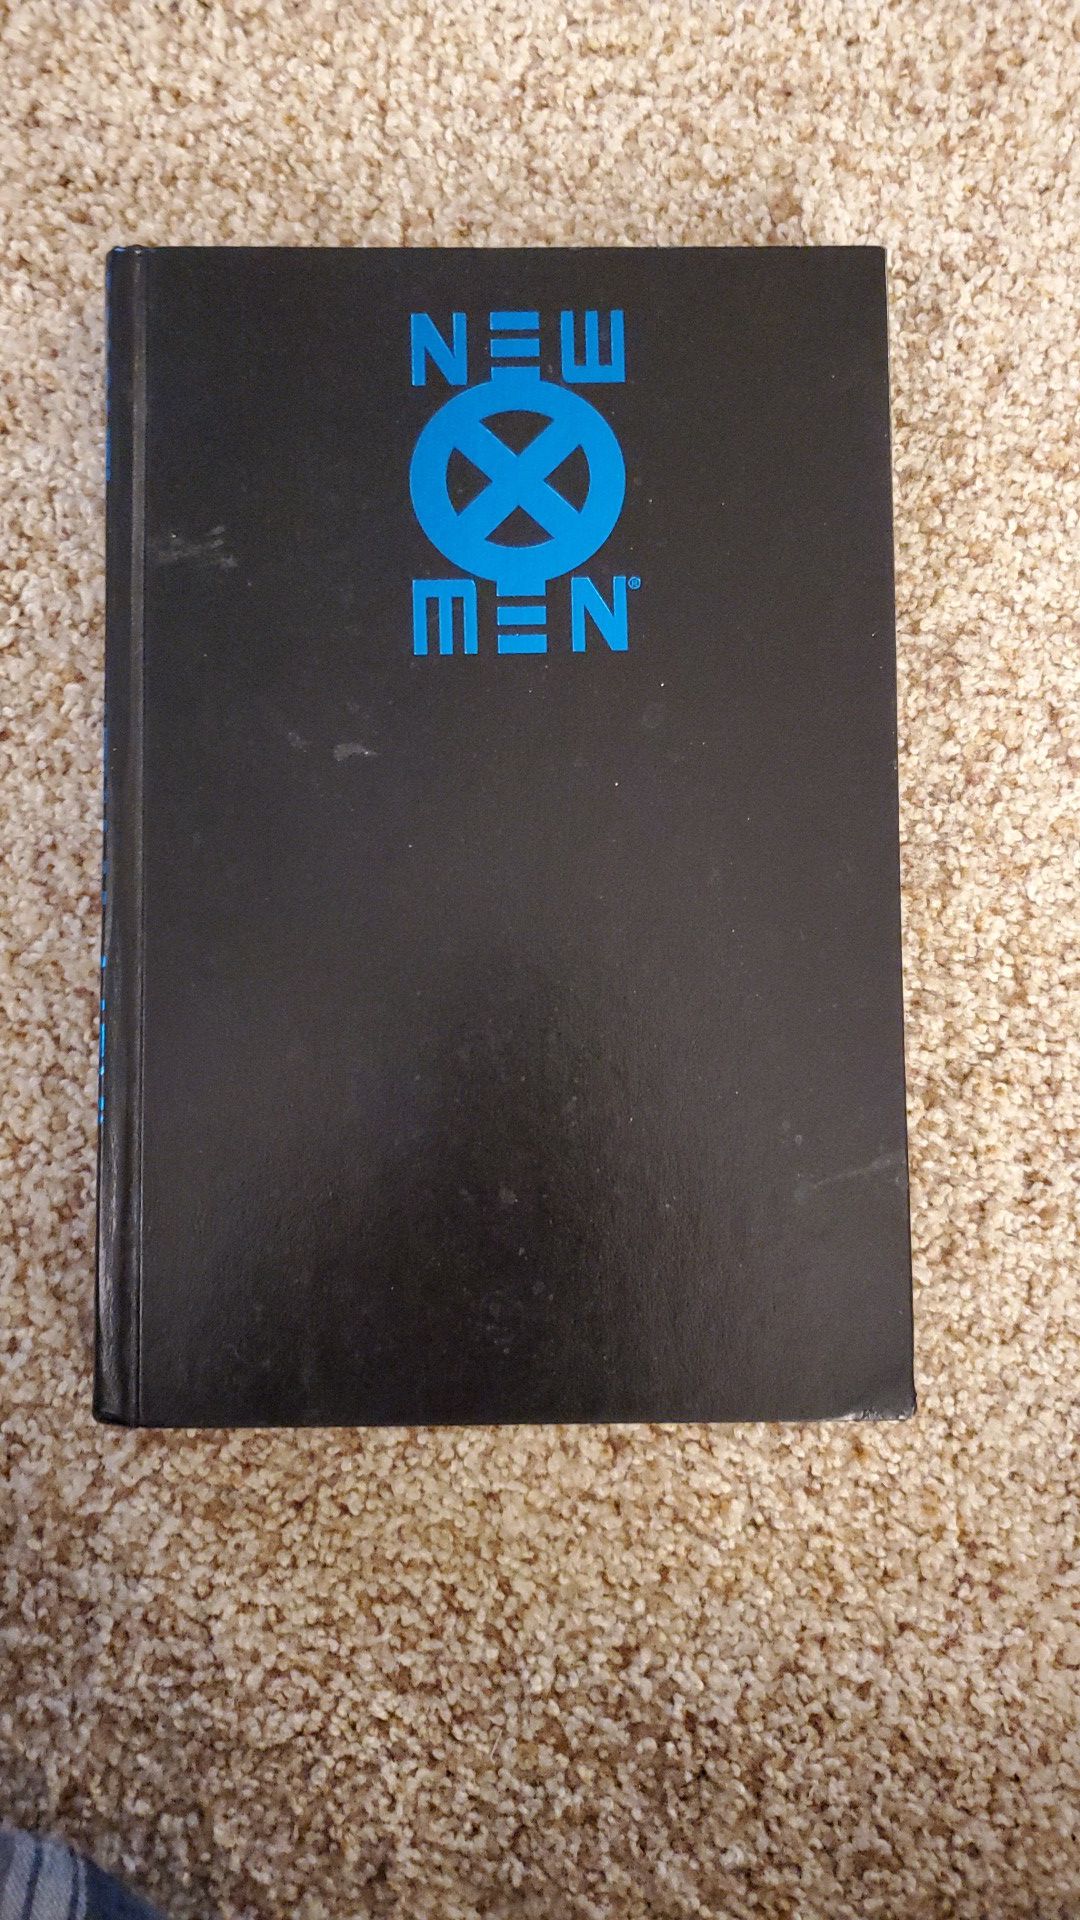 New X men vol 1